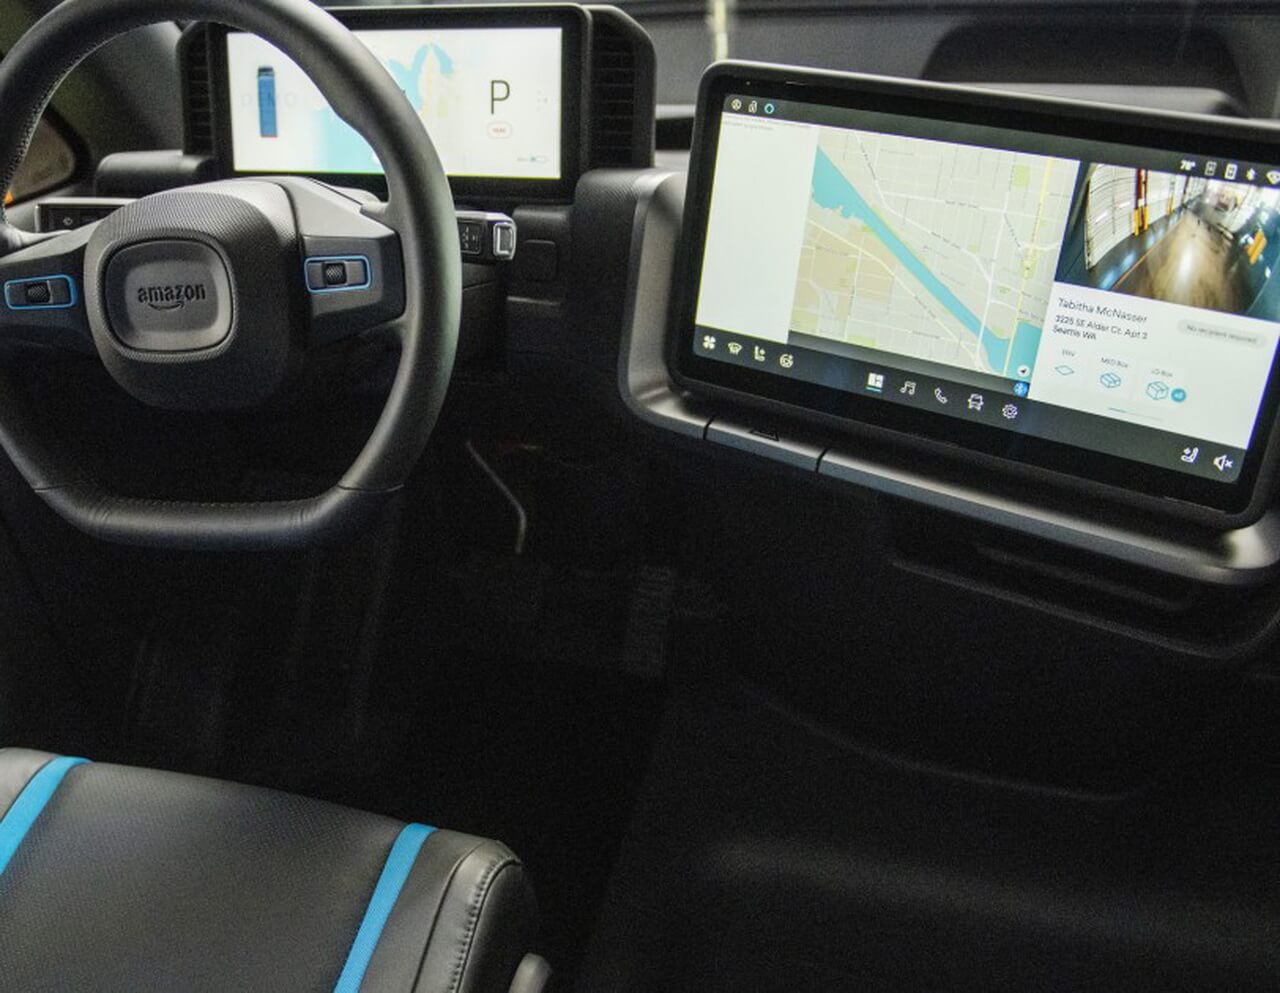 Внешние камеры вокруг автомобиля связаны с цифровым дисплеем внутри кабины, что дает водителю возможность обзора на 360 градусов за пределами автомобиля